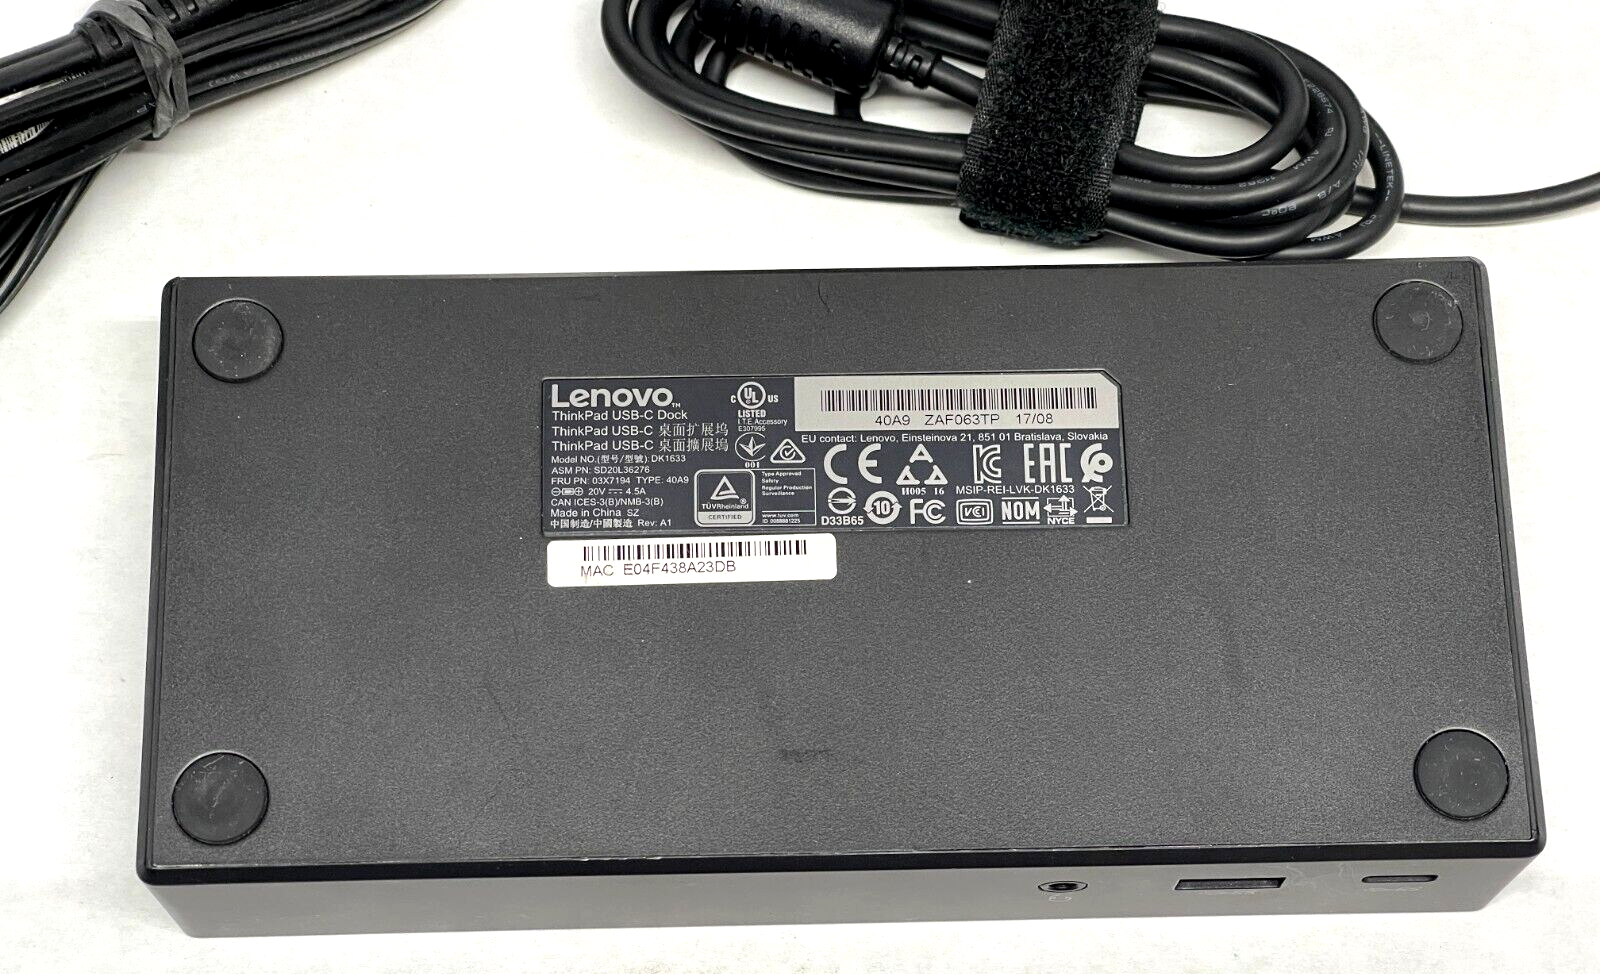 T me hq combo. Док-станция Lenovo THINKPAD USB-C Dock 40a9.